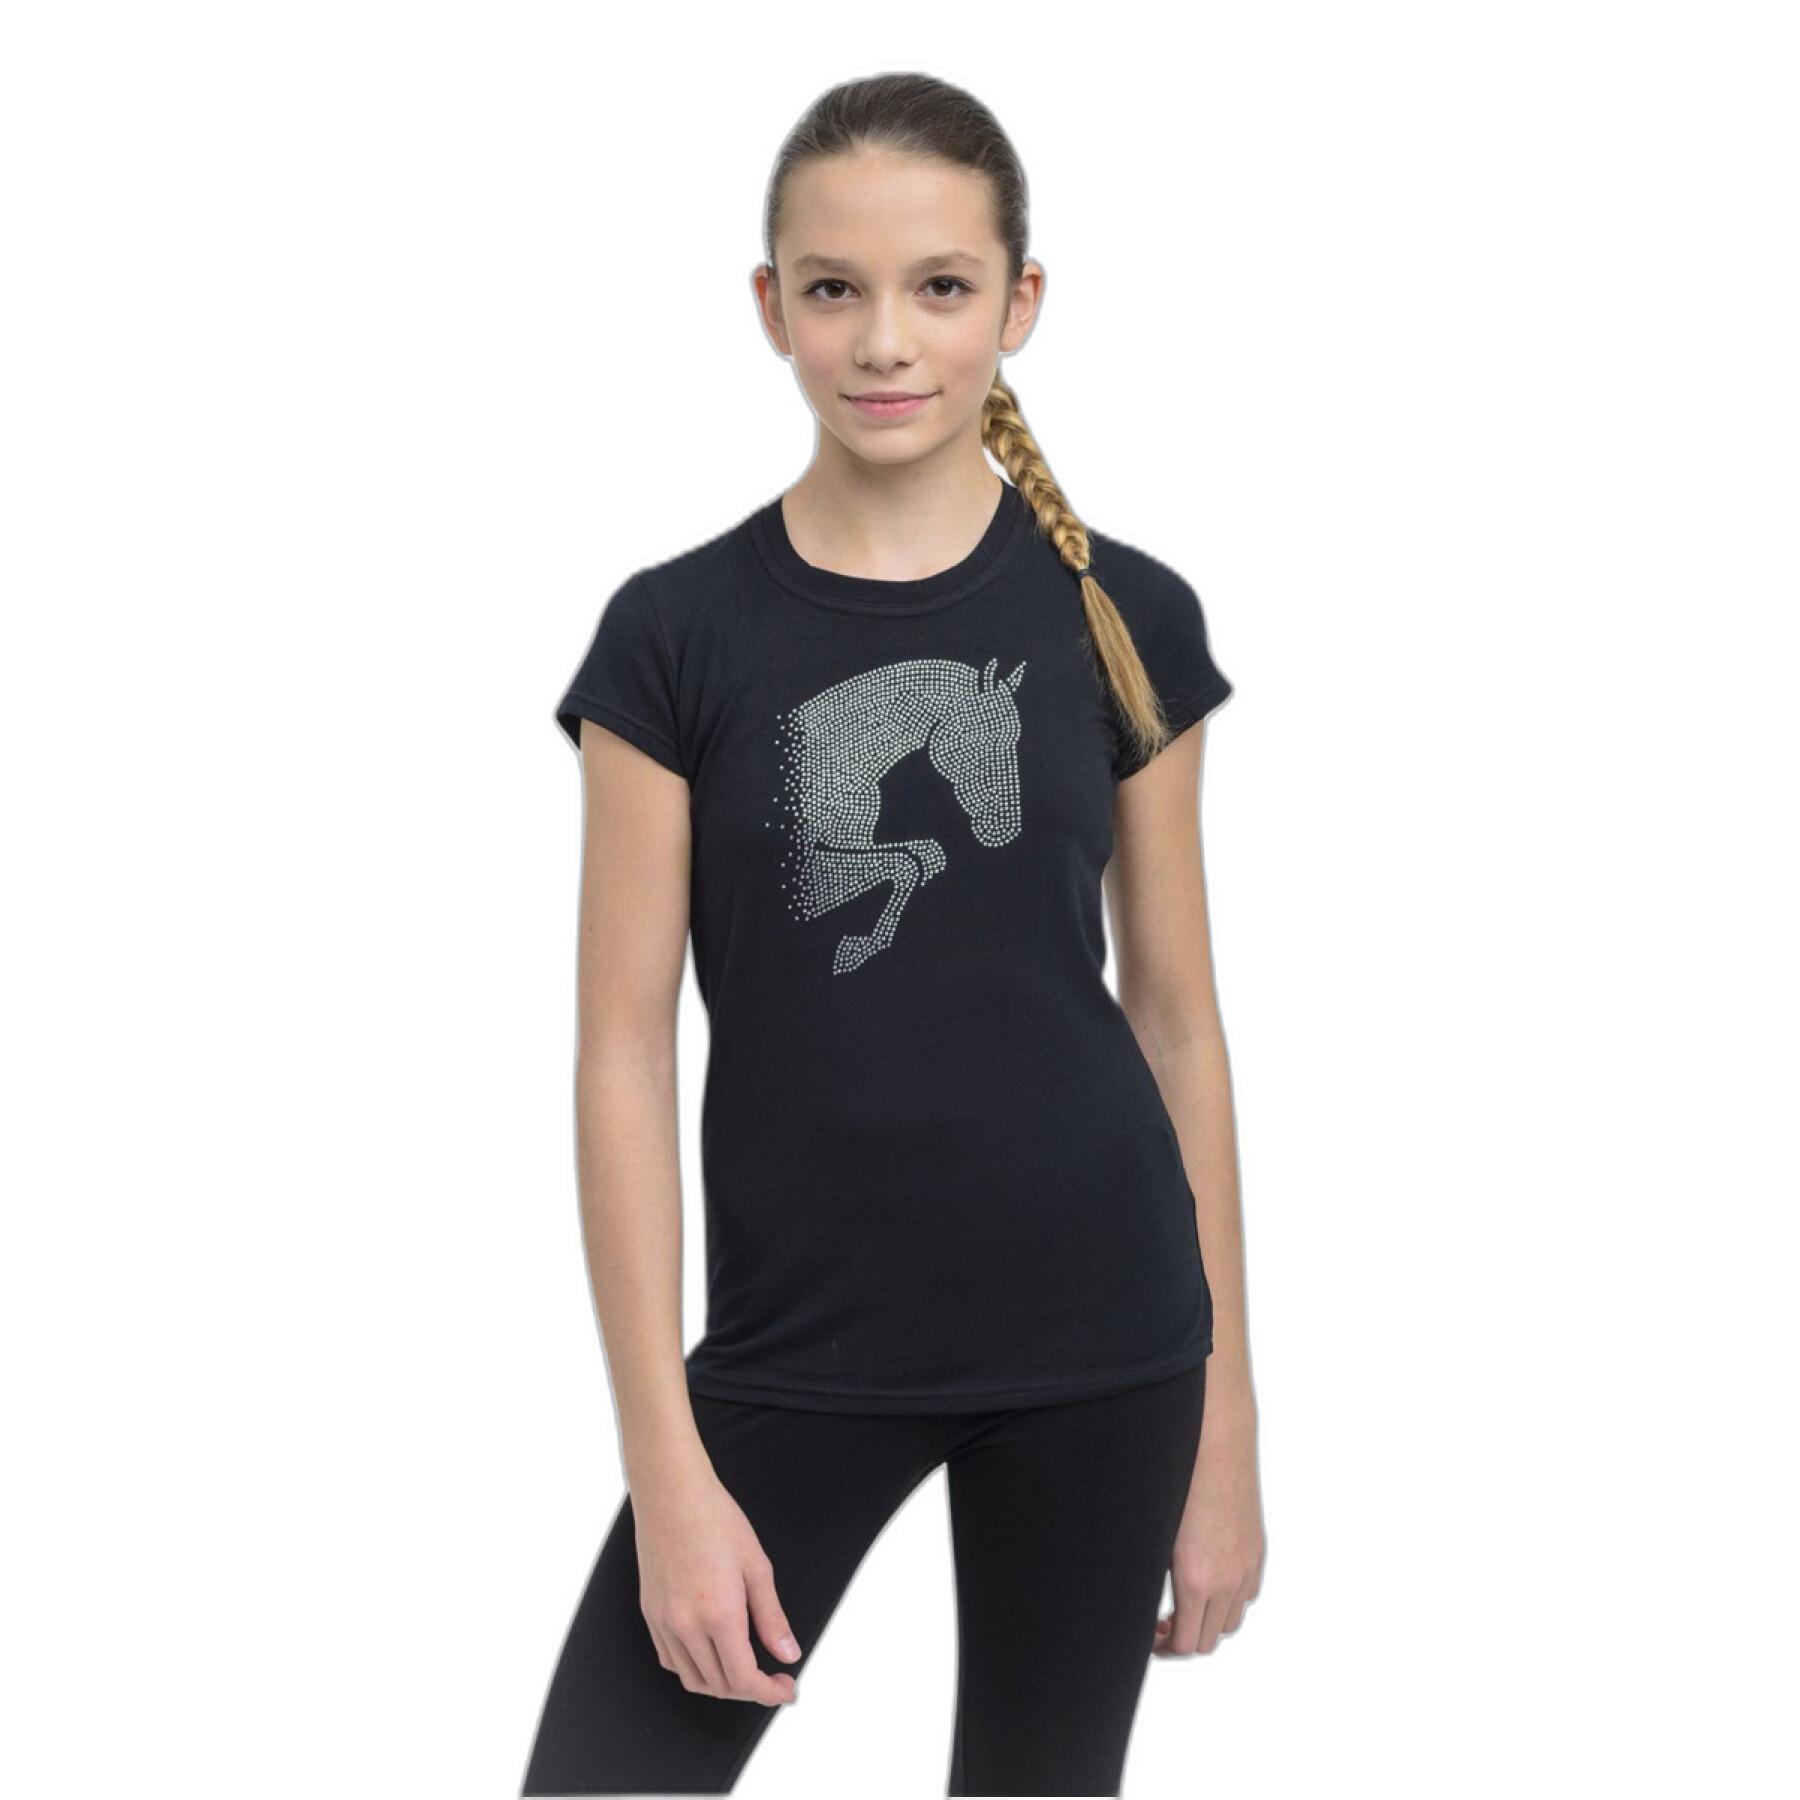 T-shirt de equitação feminina Cavalliera Jumping star